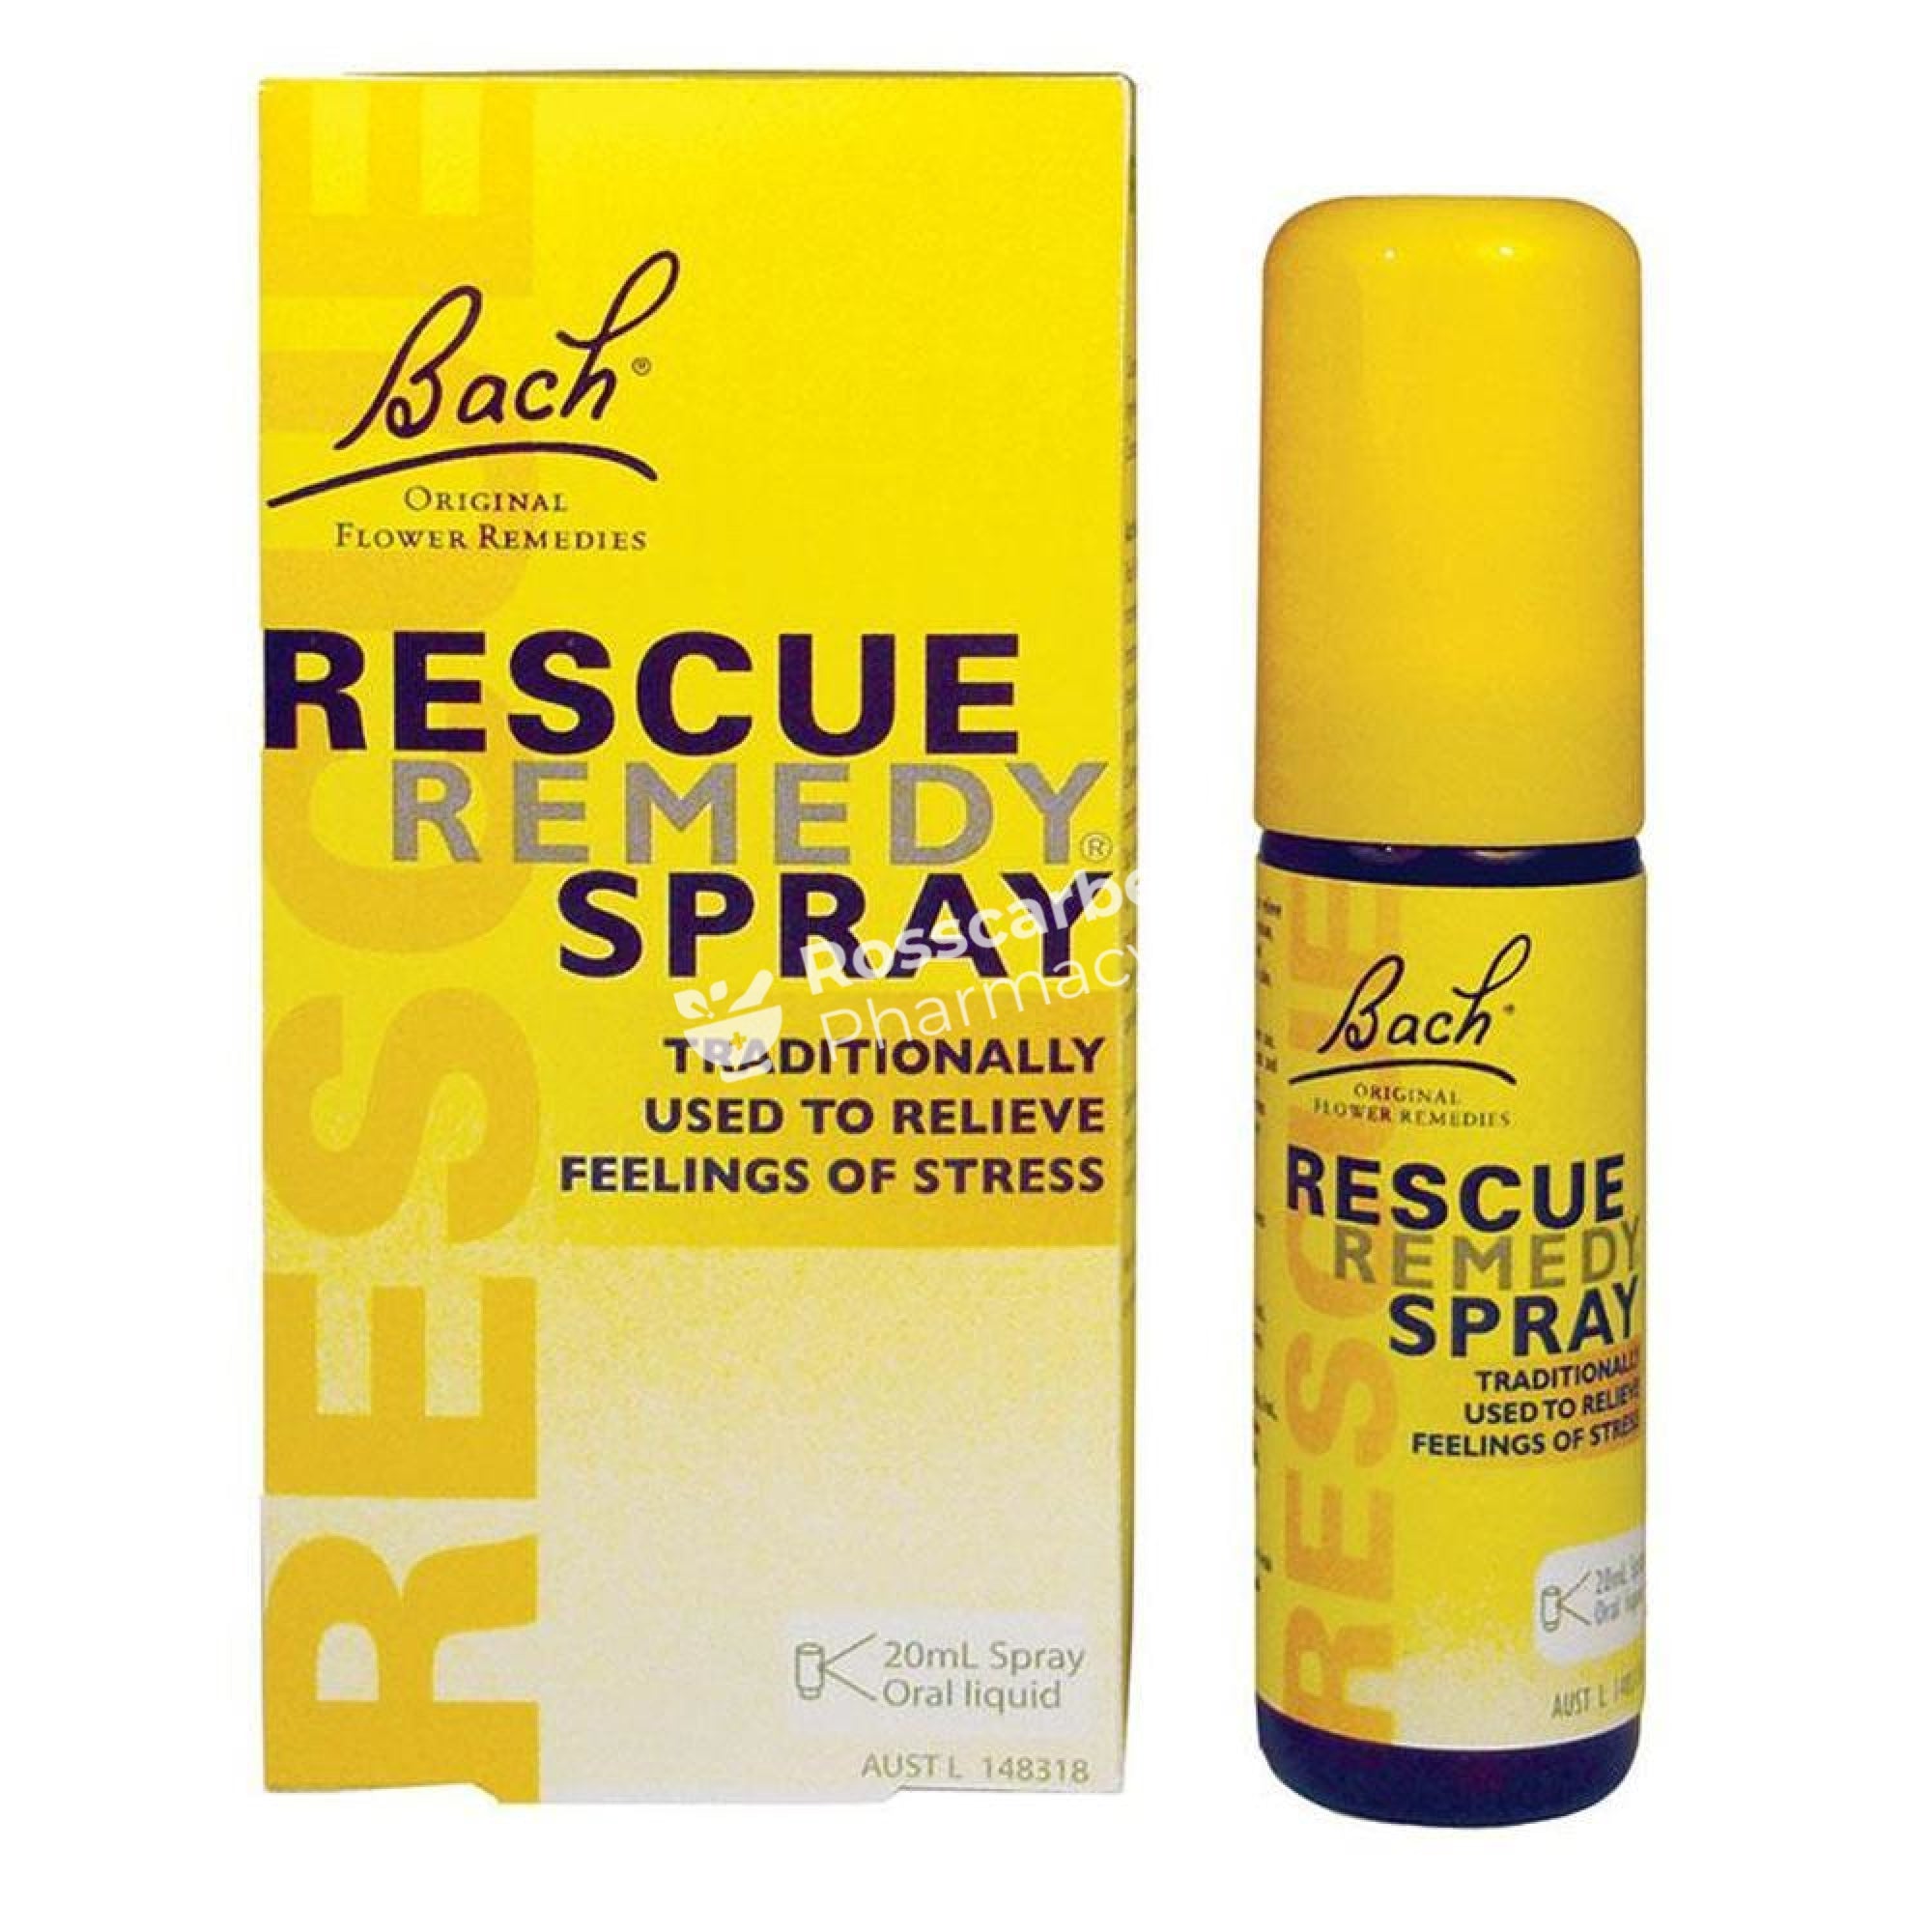 Rescue Remedy Spray - Bach Sleep & Stress